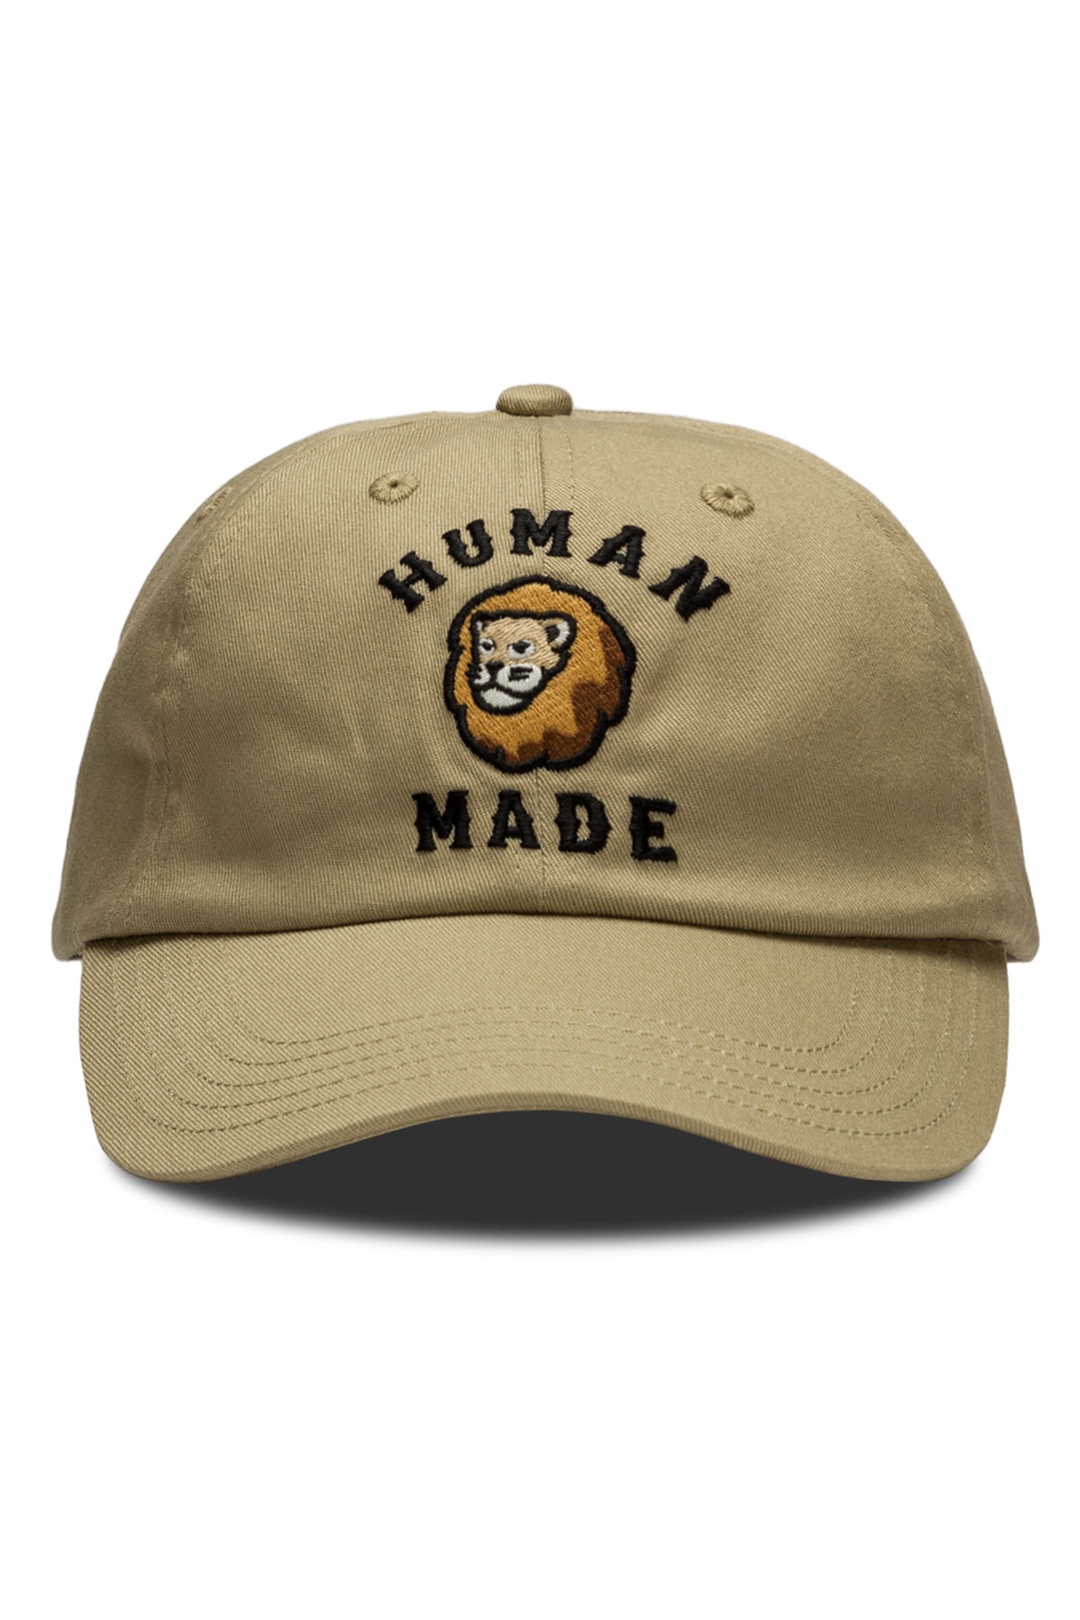 【海外 10/1 発売】HUMAN MADE × HBX ライオン・カプセルコレクション (ヒューマンメイド エイチビーエックス)